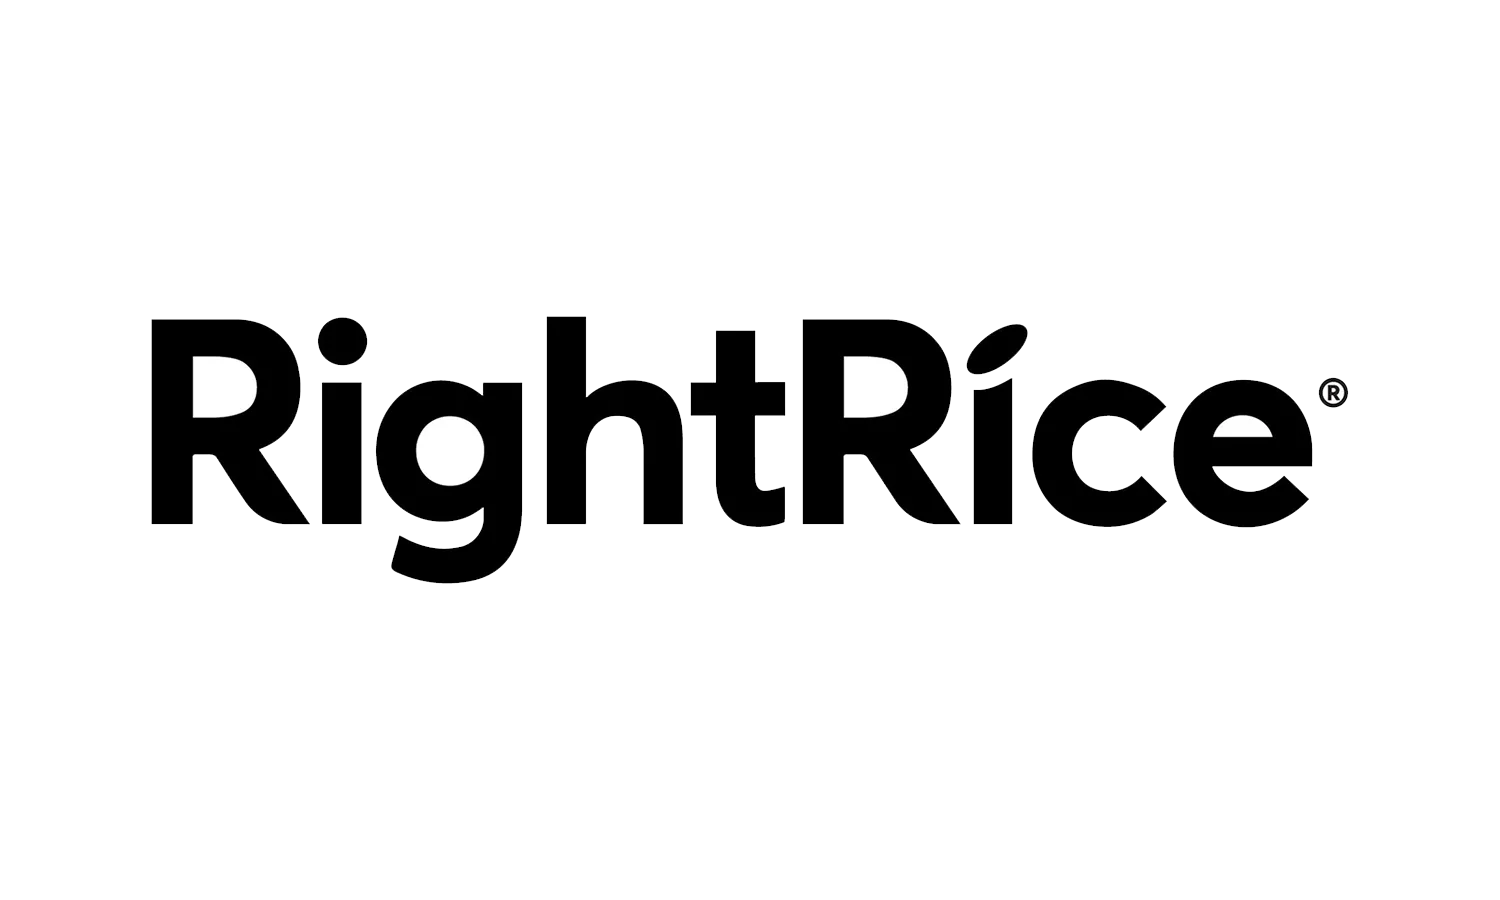 Right Rice logo